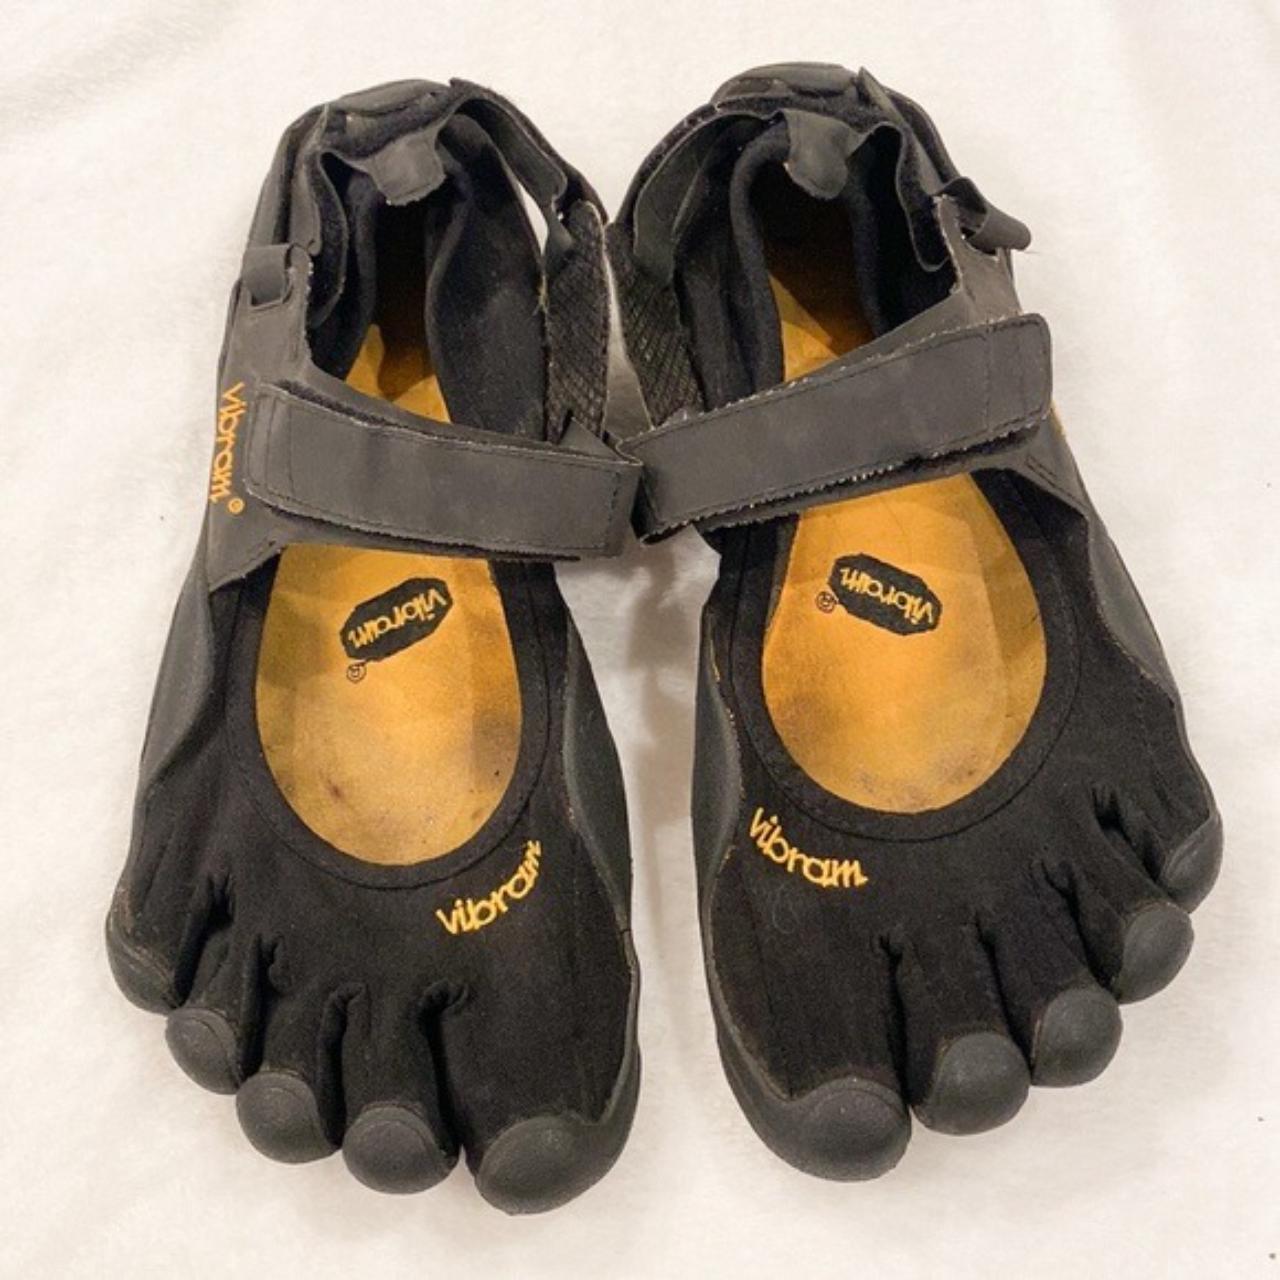 Vibram tech water friendly toe shoes adjustable in... - Depop